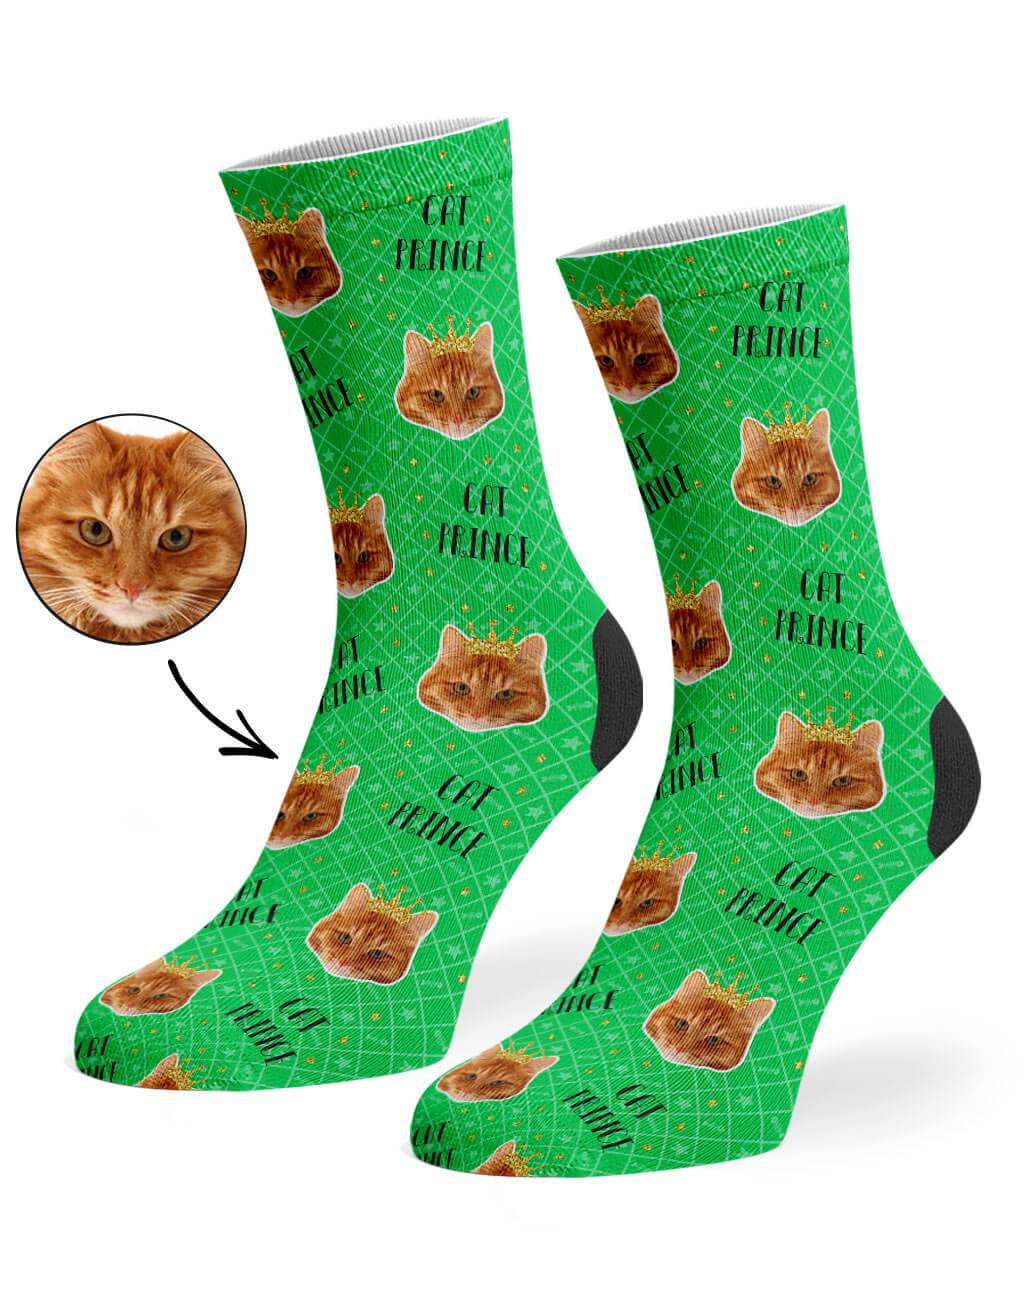 Cat Prince Custom Socks